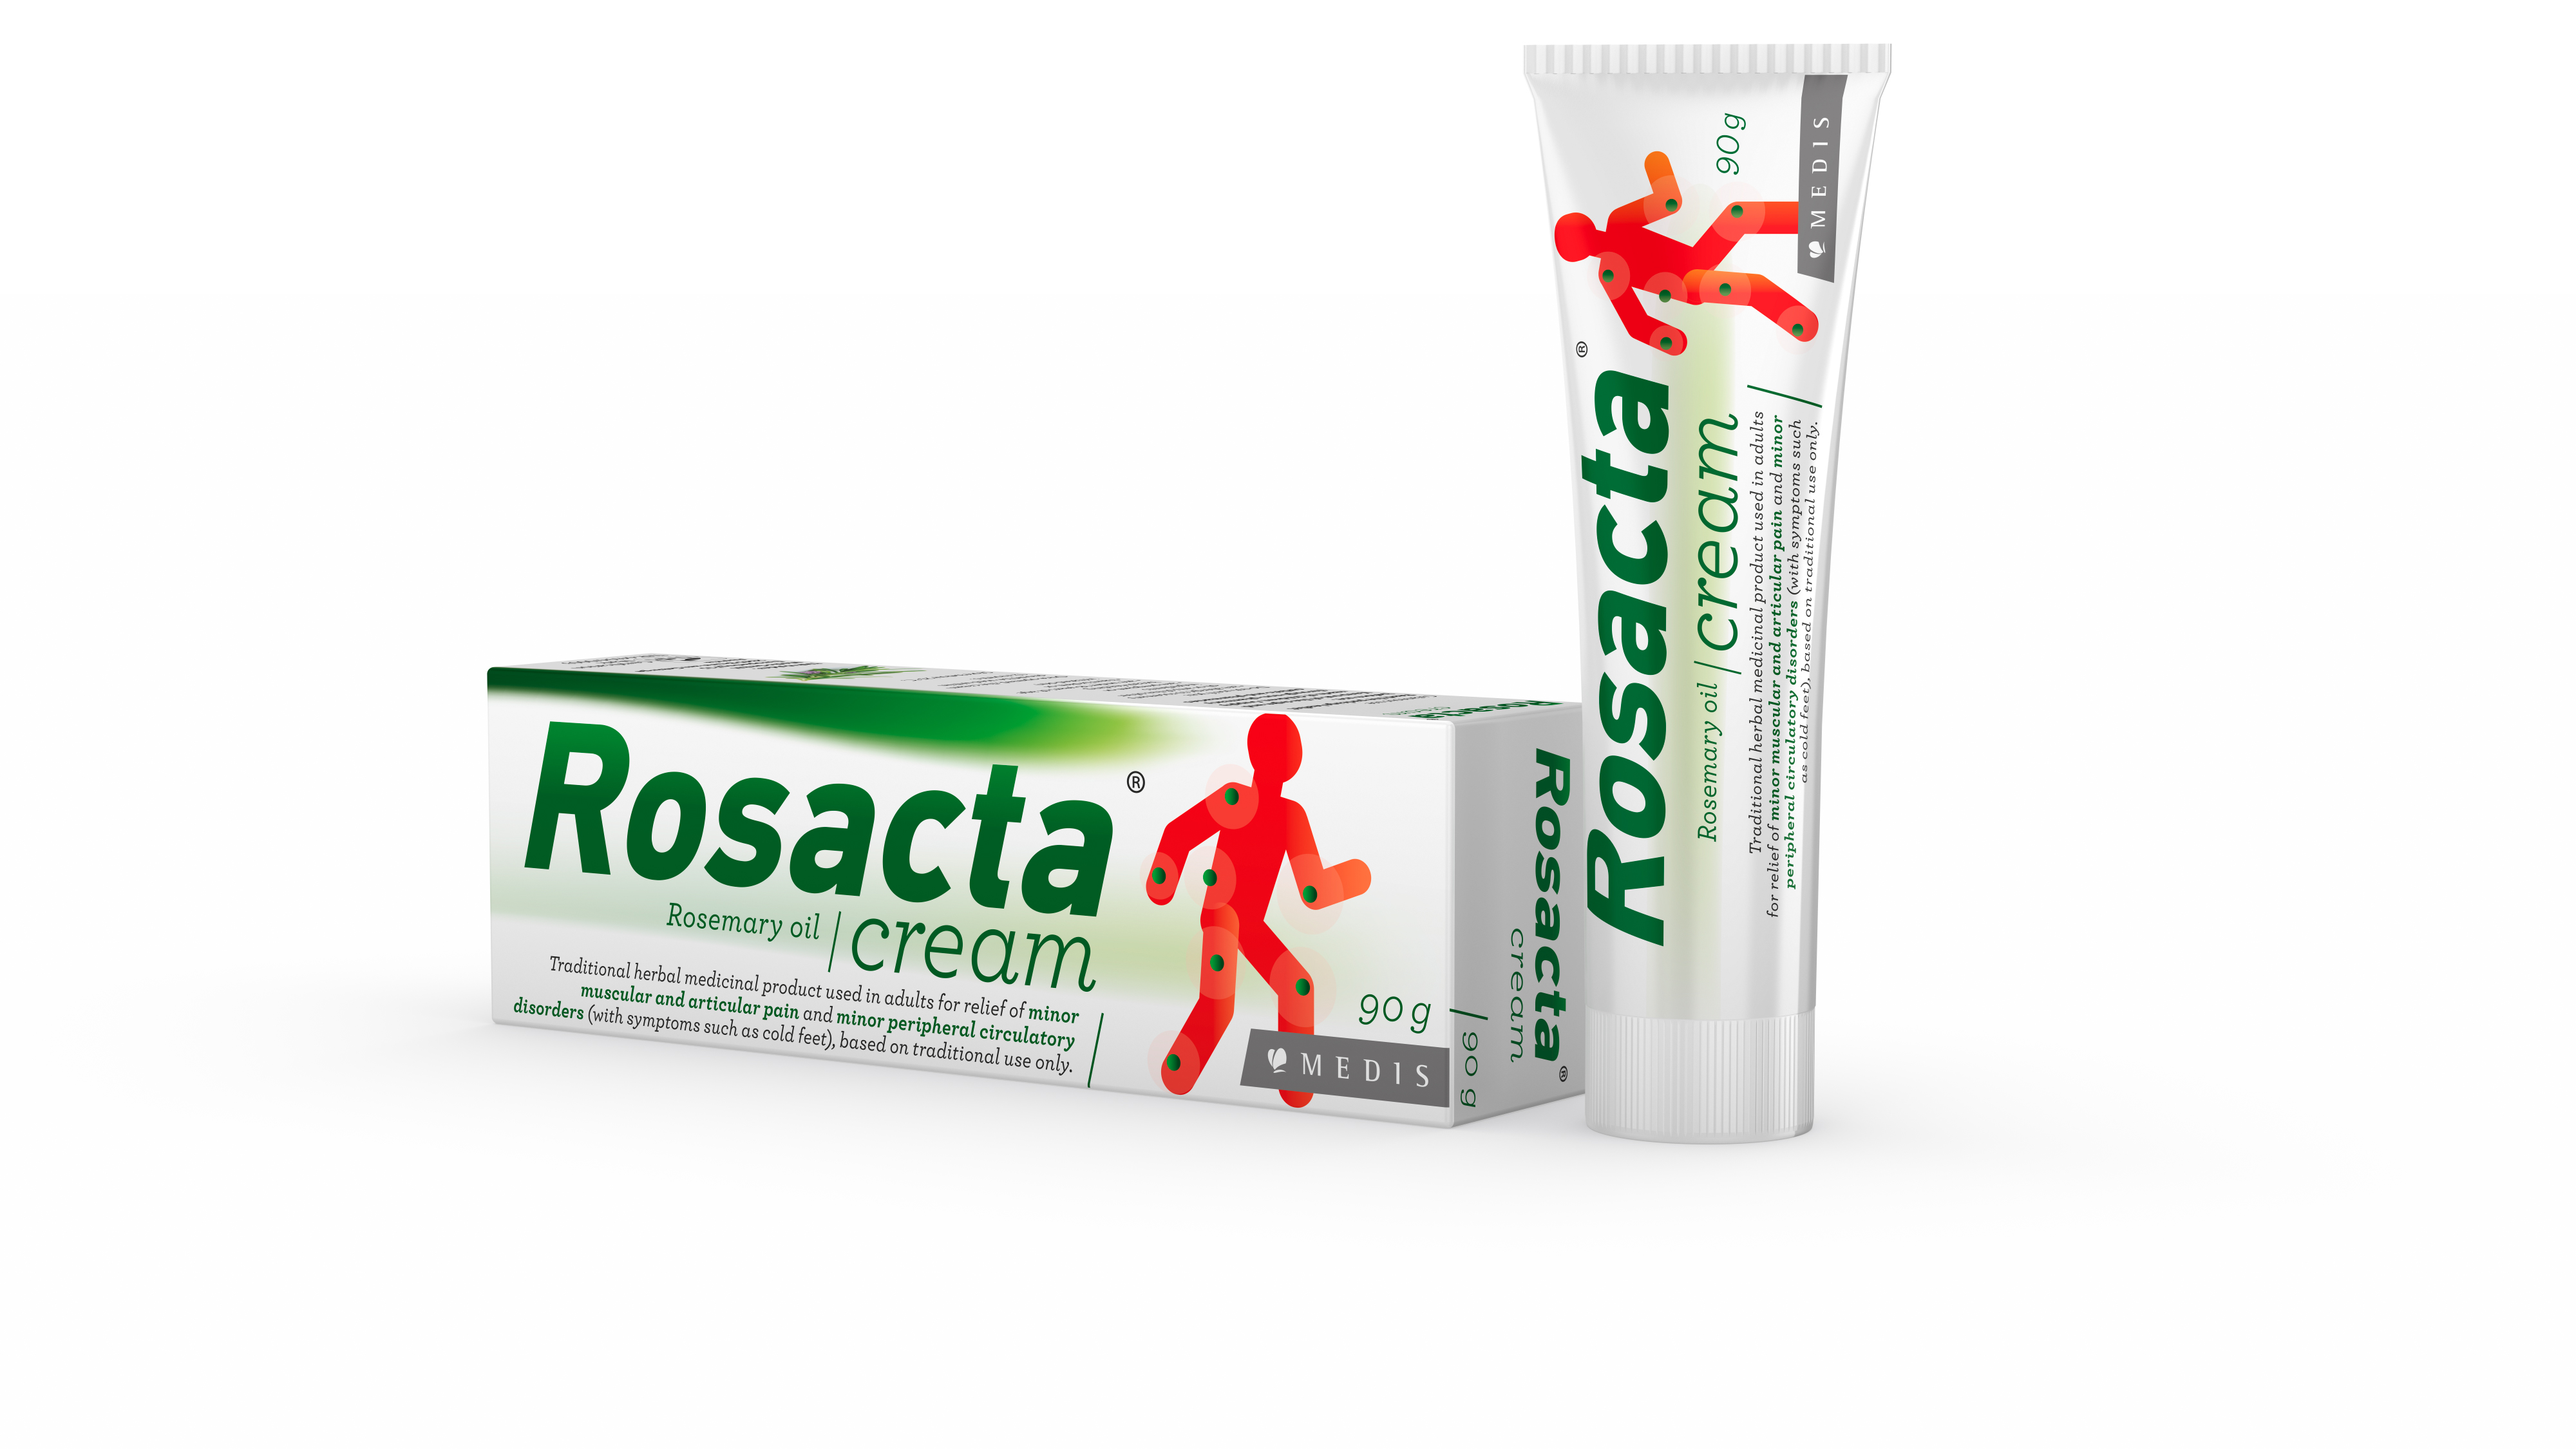 Rosacta® Cream